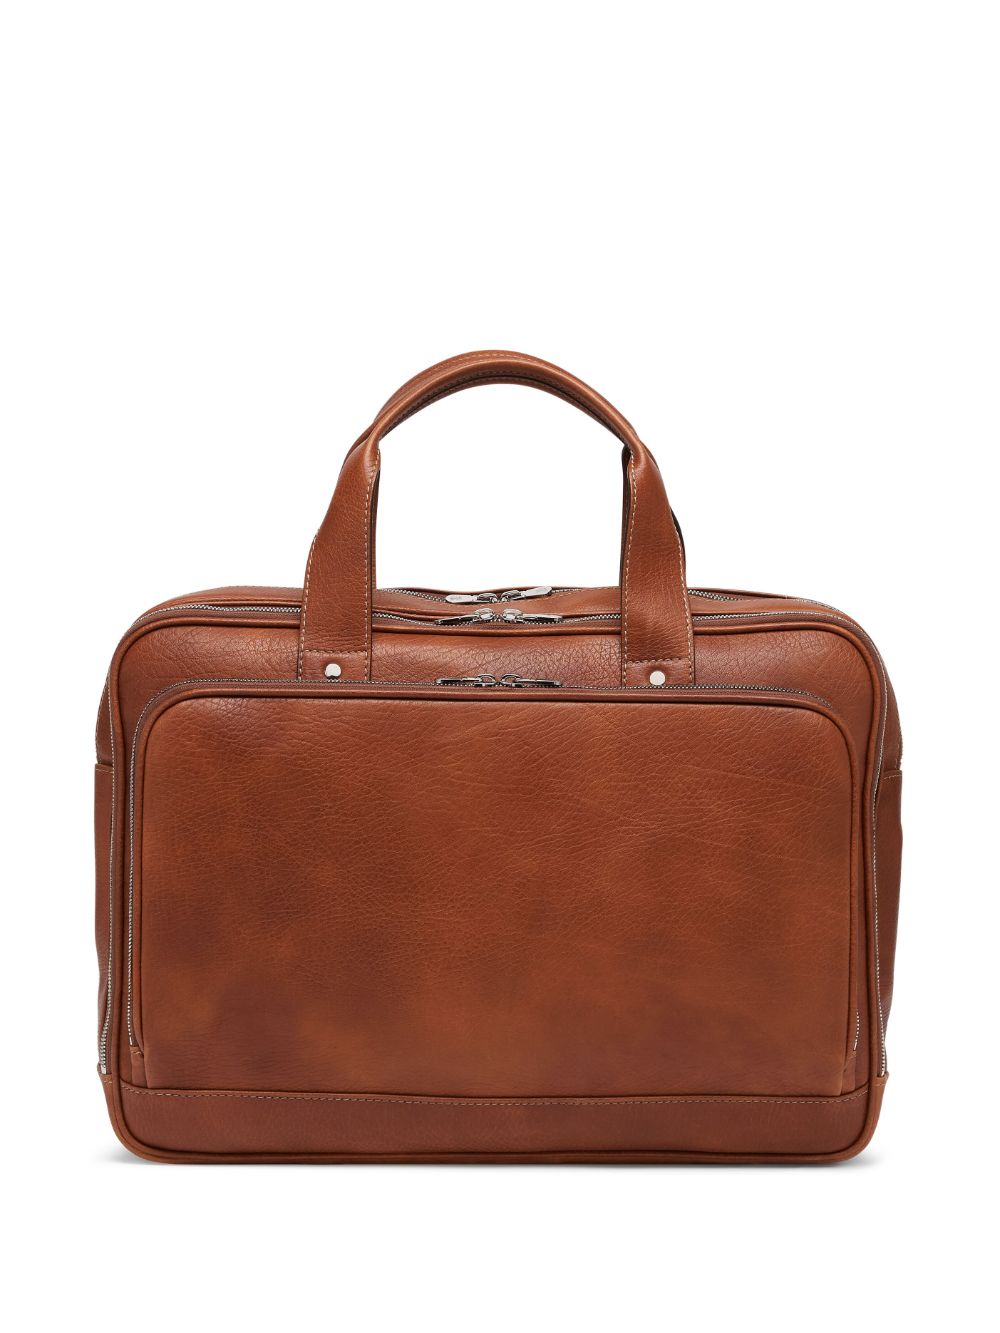 Brunello Cucinelli zipped leather briefcase - Brown von Brunello Cucinelli